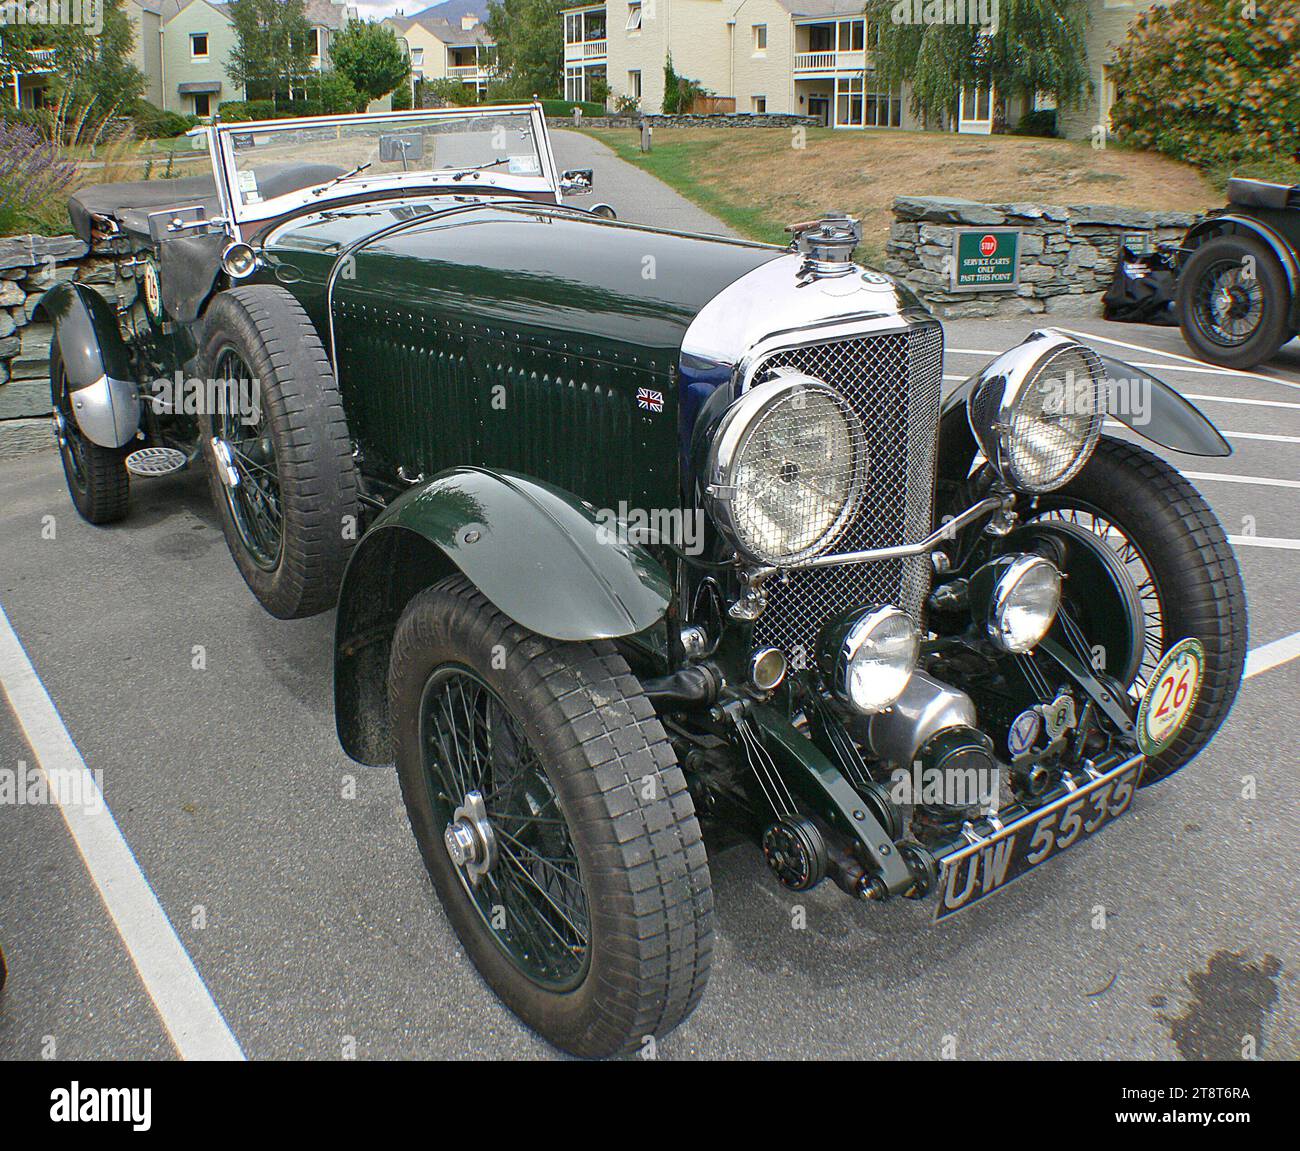 1930 Bentley Speed SIX, le fondateur de Bentley Walter Owen Bentley considérait la Speed six comme son modèle préféré. Il a été couronné de succès et le plus grand modèle de course offert par Bentley. Il a également clôturé les séries légendaires de victoires du Mans dont 1924, 27, 28, 29 et 30. Le dernier de ces modèles a été réalisé avec des Speed Sixes équipés de la carrosserie Van den Plas de Belgique Banque D'Images